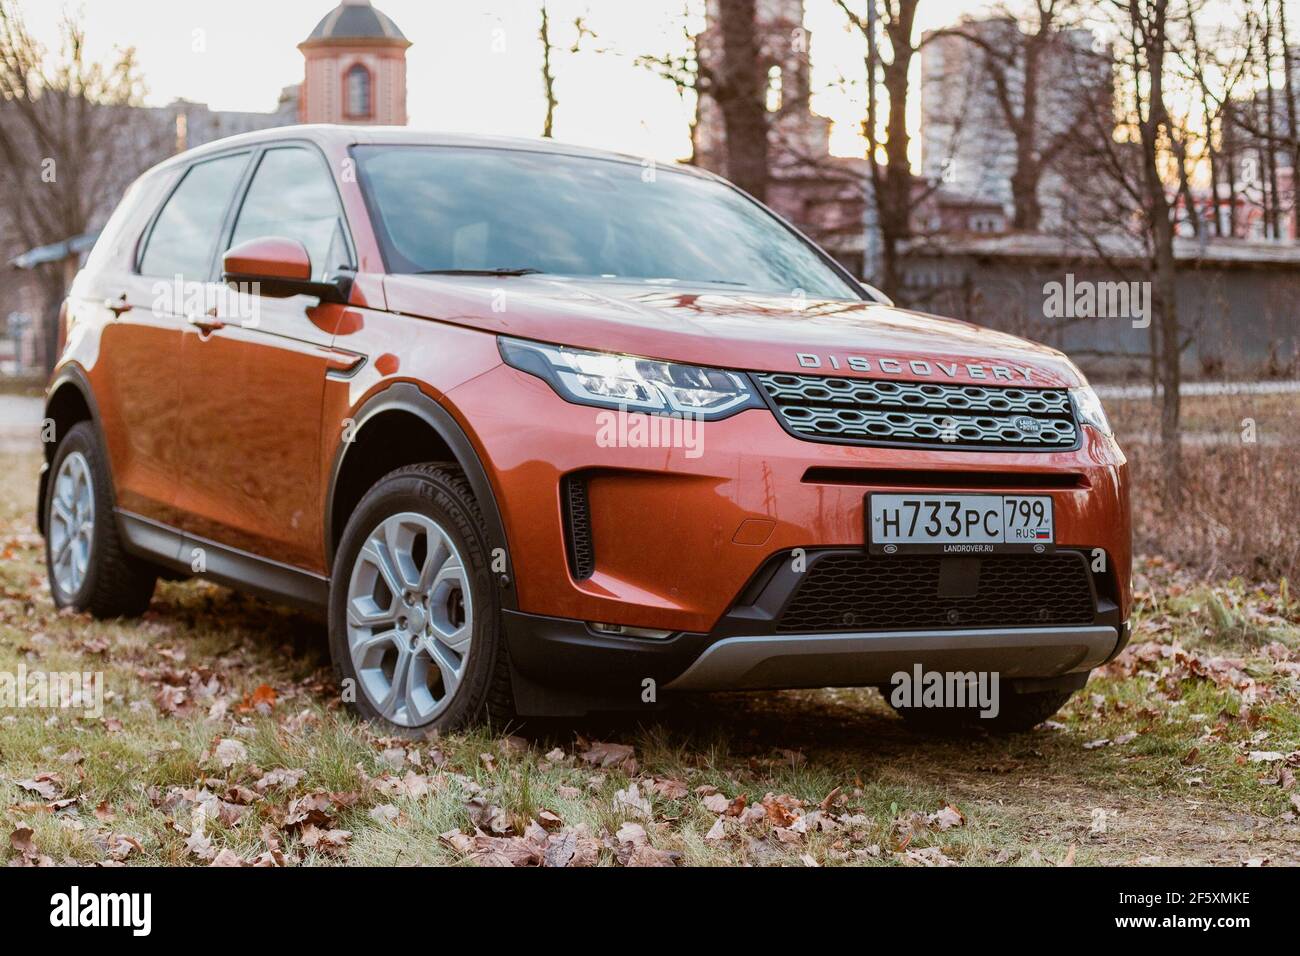 Moskau, Russland - 20. Dezember 2019: Vorderansicht des neuen Premium england suv. Land Rover Discovery Sport im grauen Wald geparkt. Orange Allradantrieb Auto steht auf dem Boden. Stockfoto